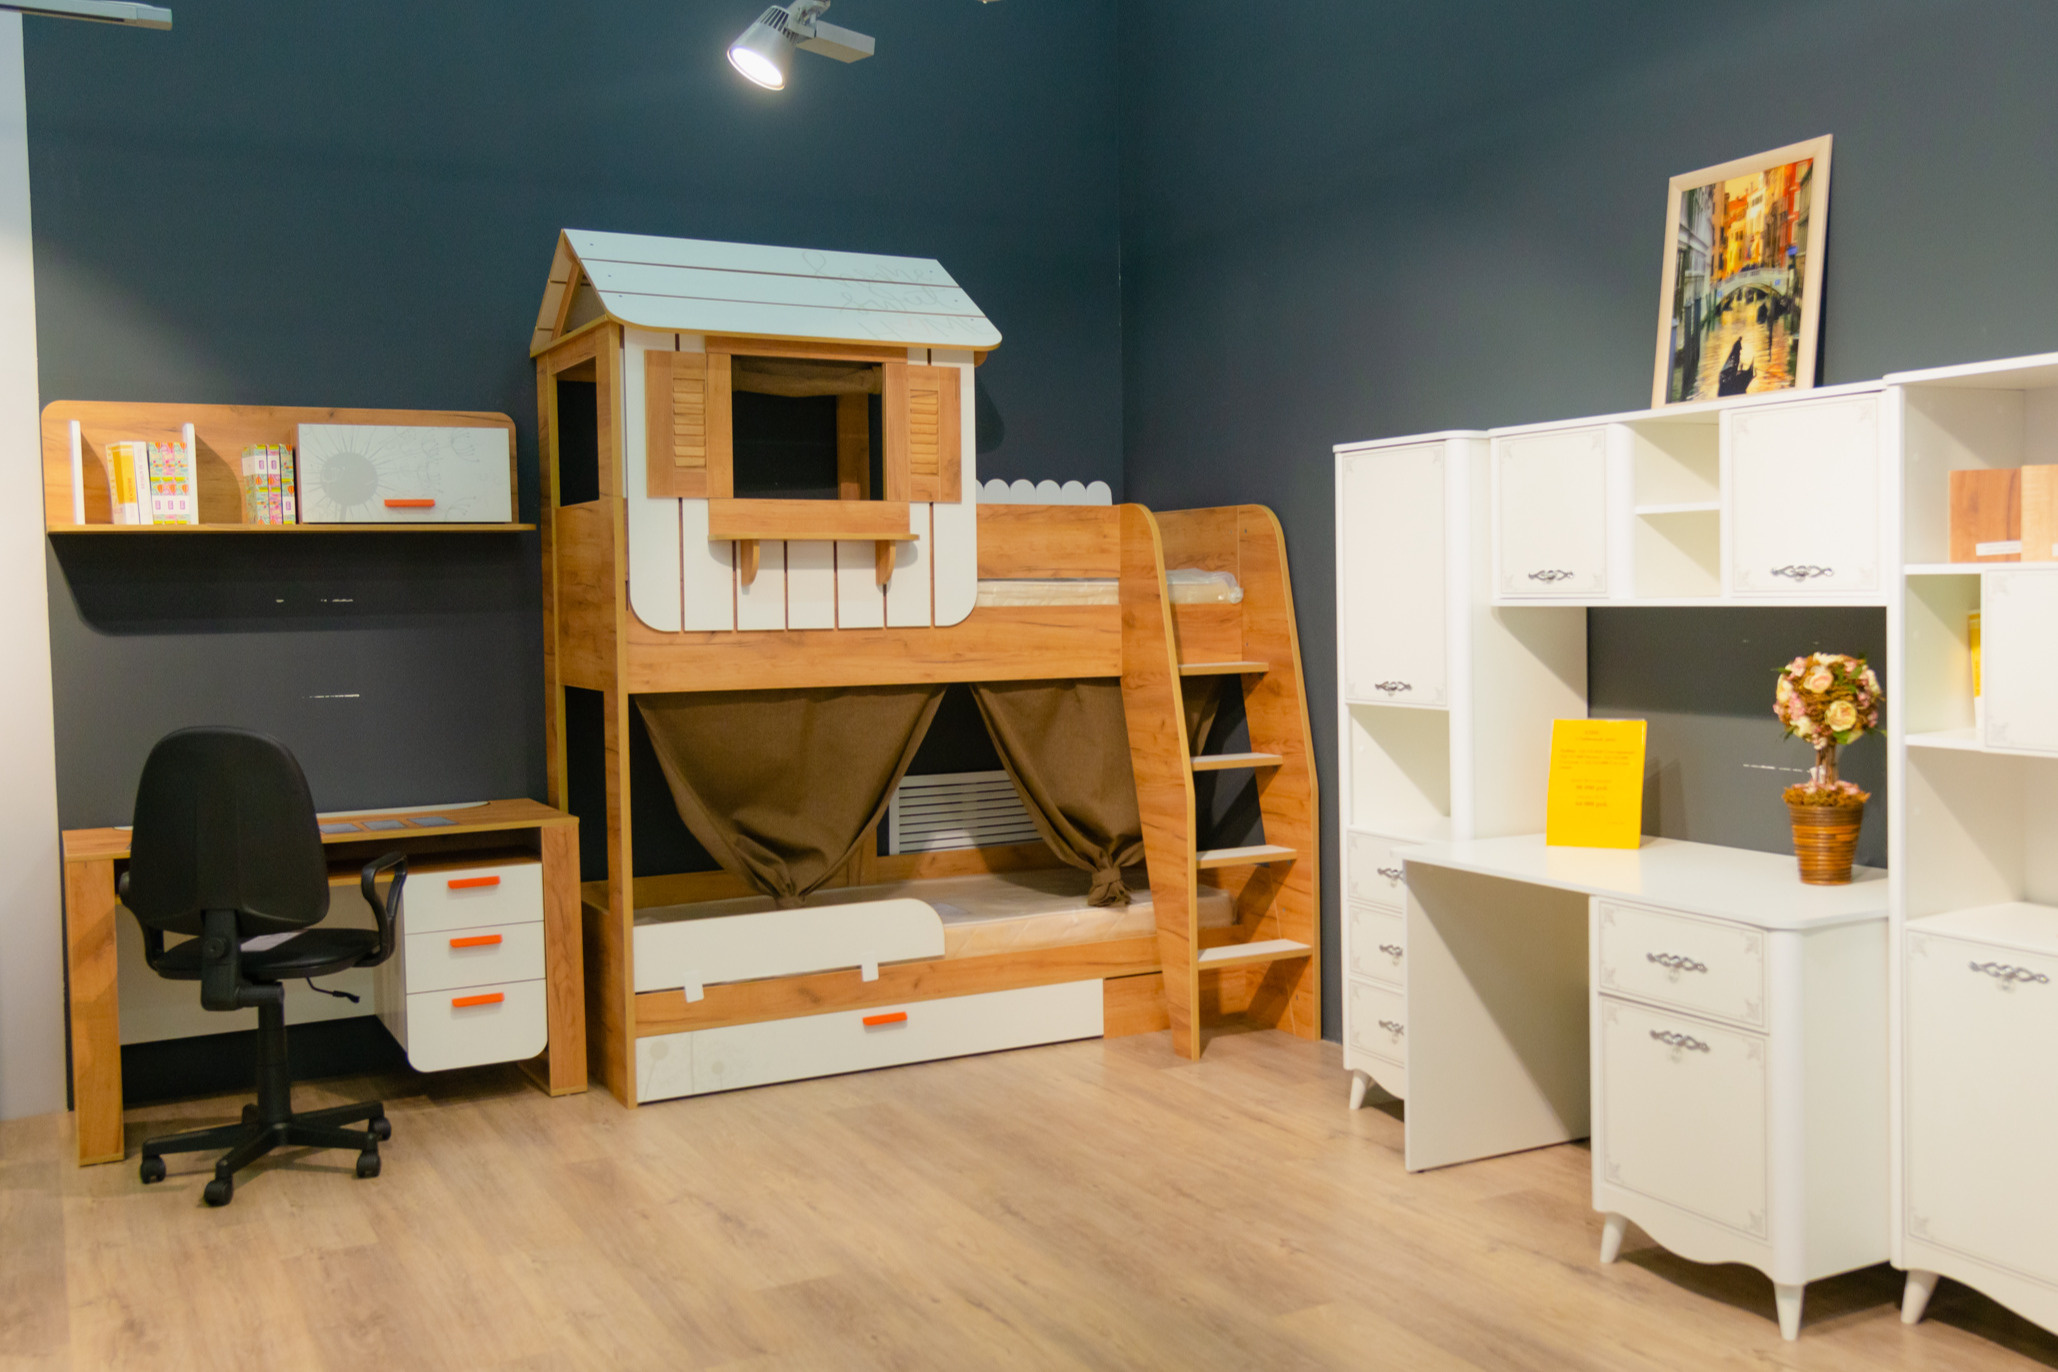 В Family Room есть отделы, где можно найти и готовые решения, и отдельные рабочие столы, ортопедические кровати, шкафы и стеллажи для хранения вещей и игрушек